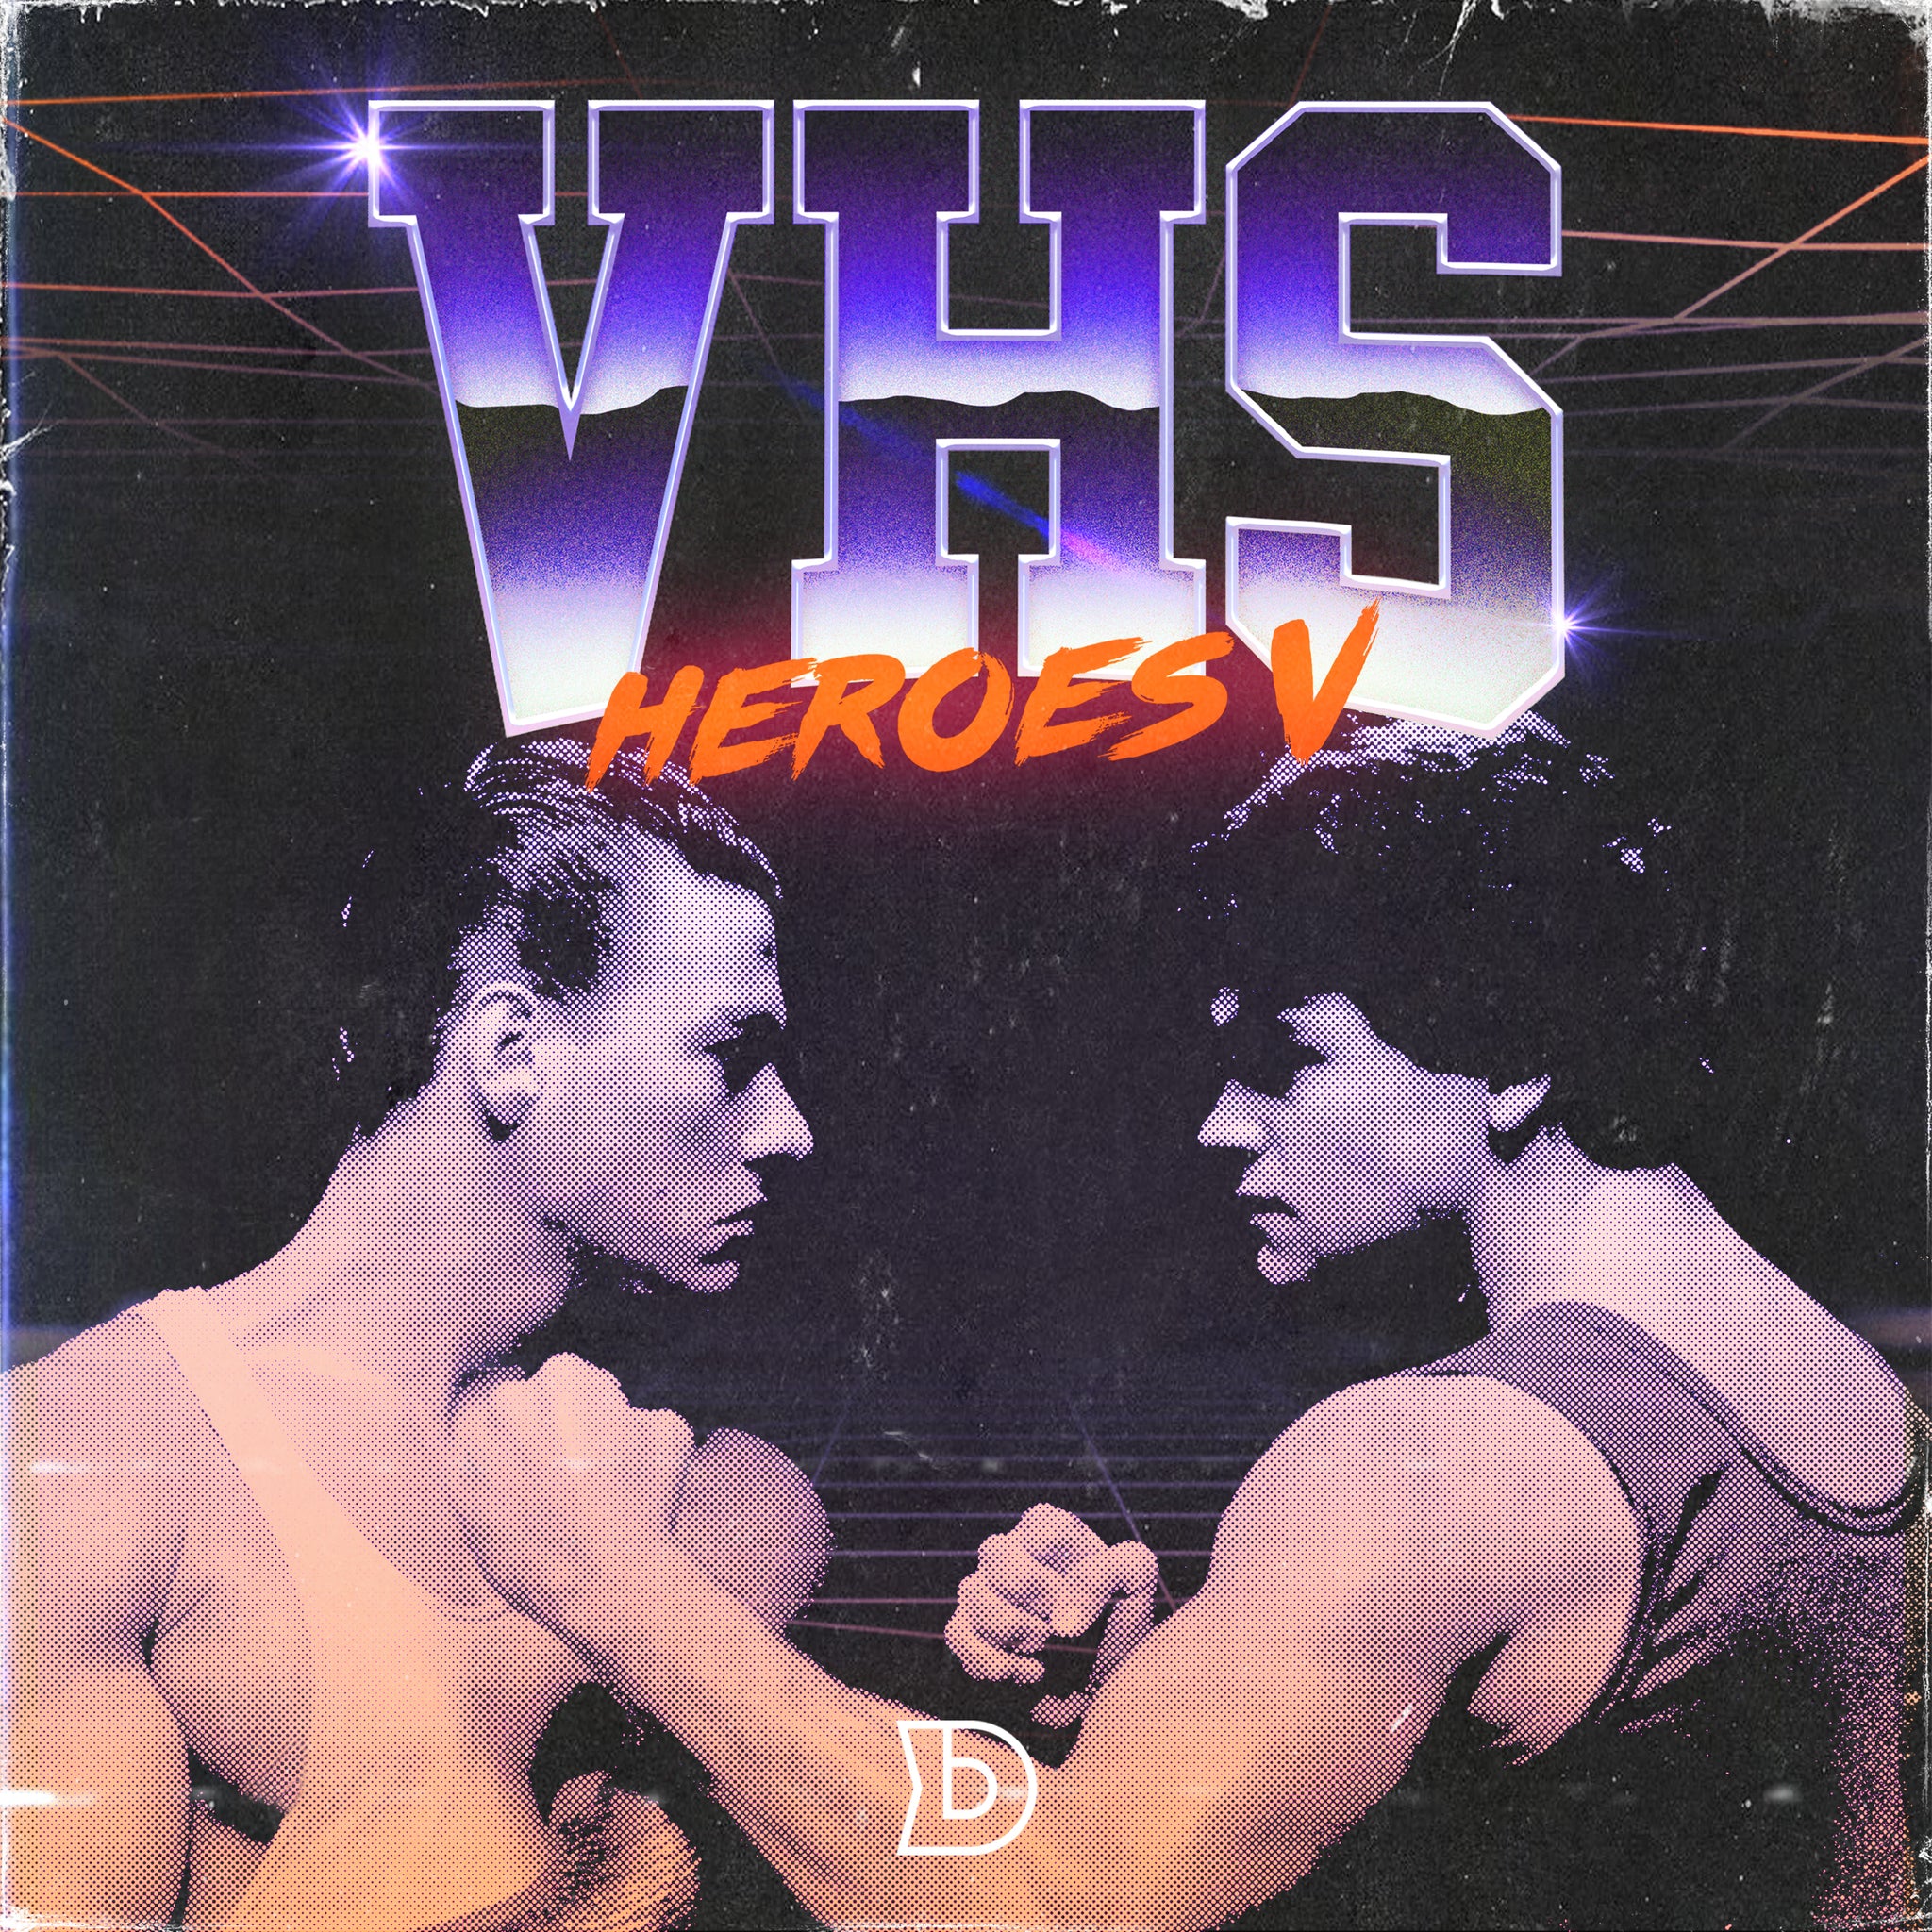 VHS Heroes Vol. 5